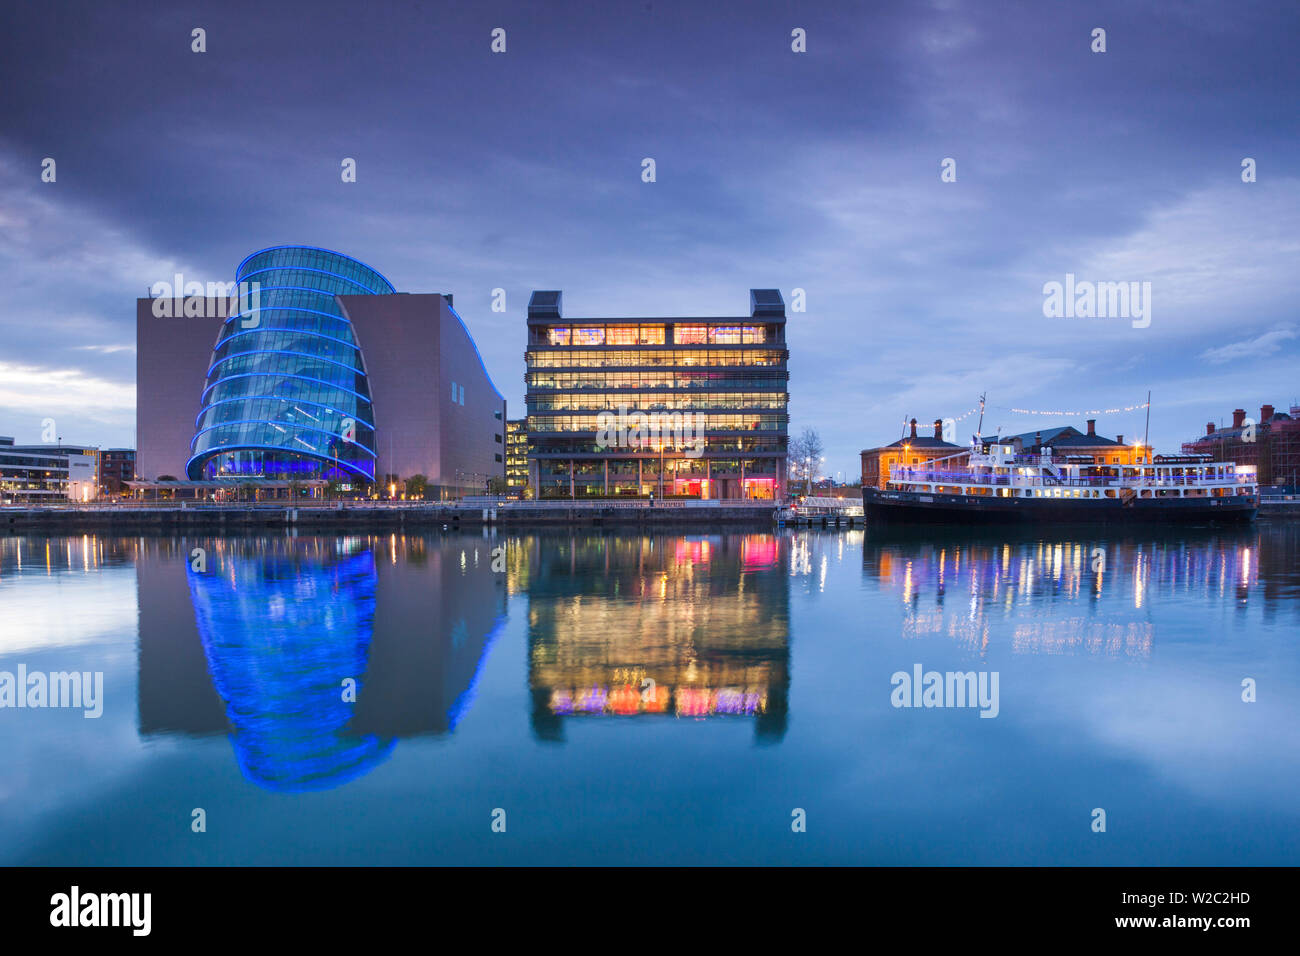 Ireland, Dublin, Docklands, Convention Centre Dublin, dusk Stock Photo